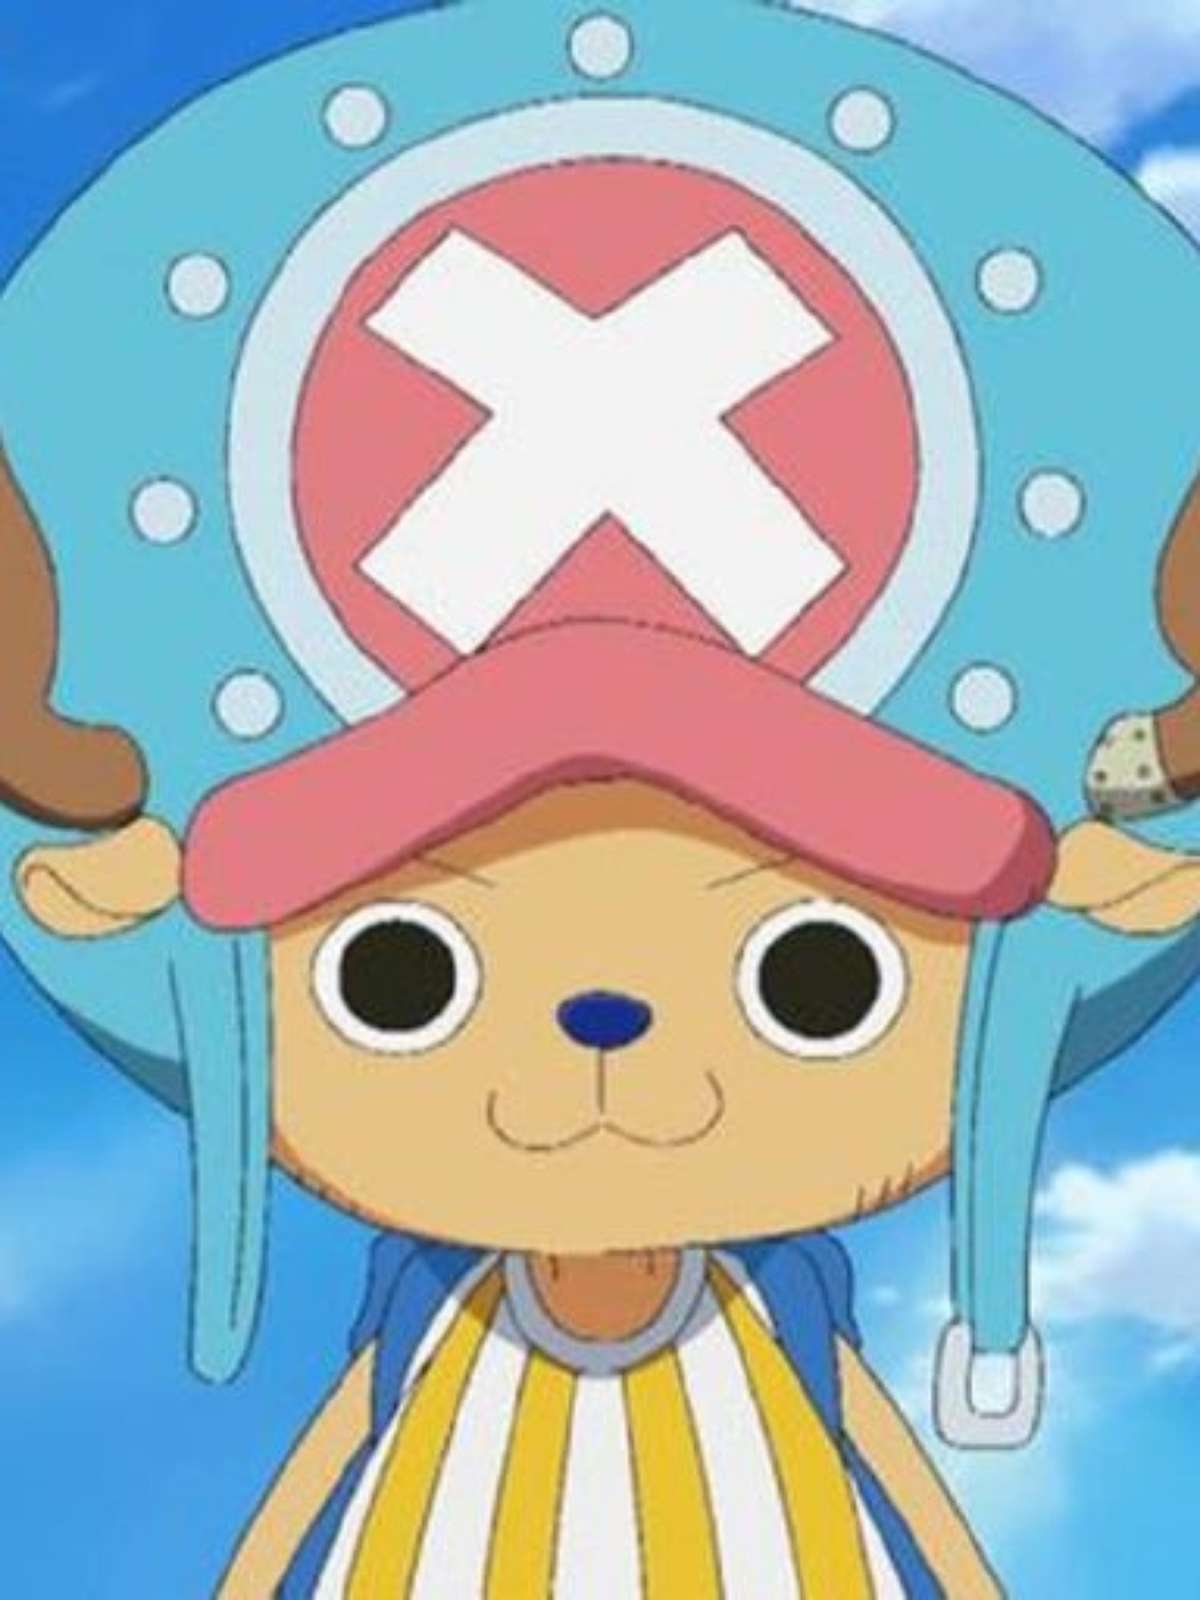 Bichinho One Piece Chooper Frete Personagens Outros